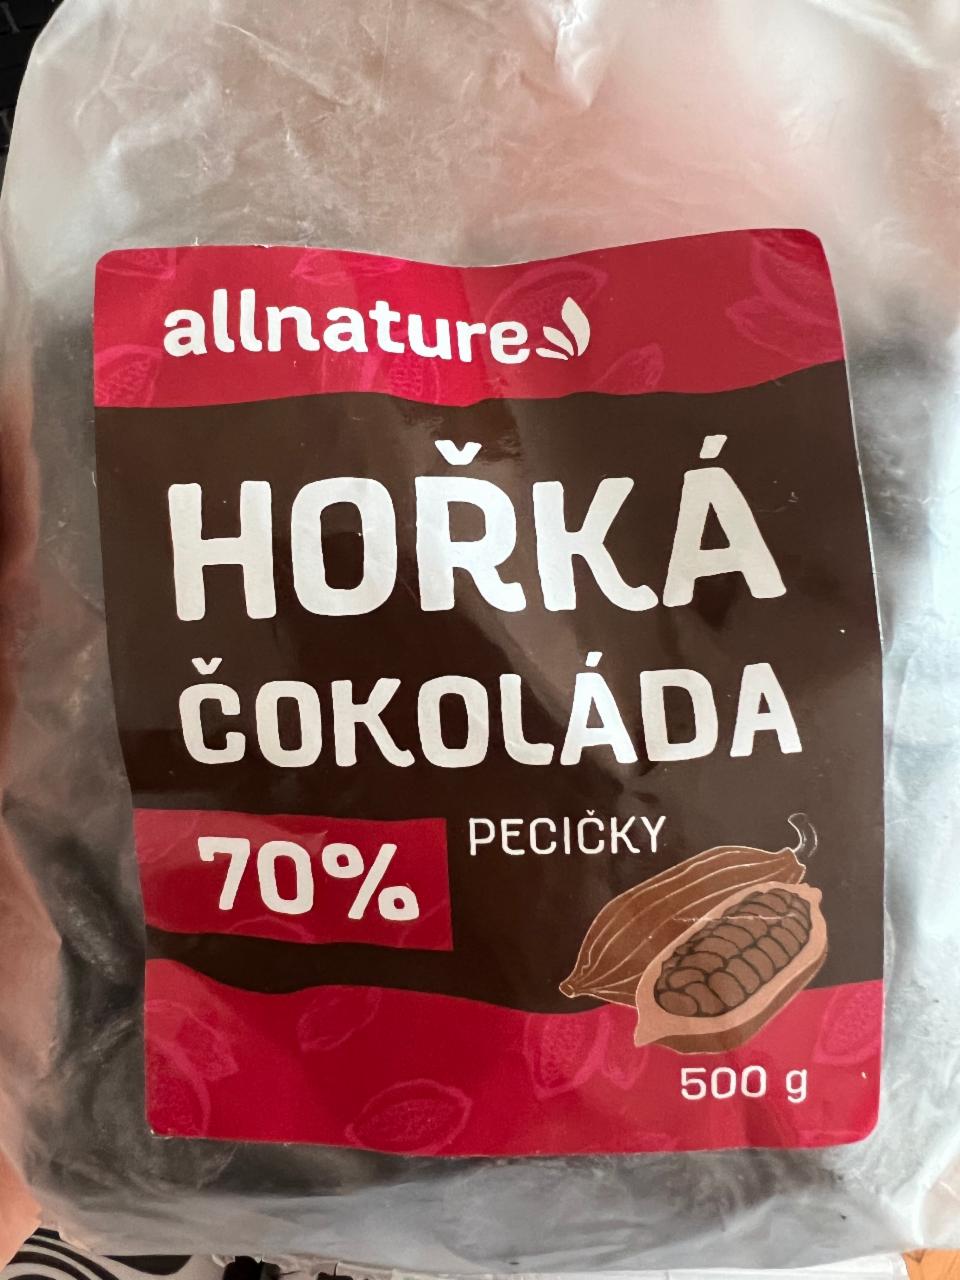 Fotografie - Hořká čokoláda 70% pecičky Allnature